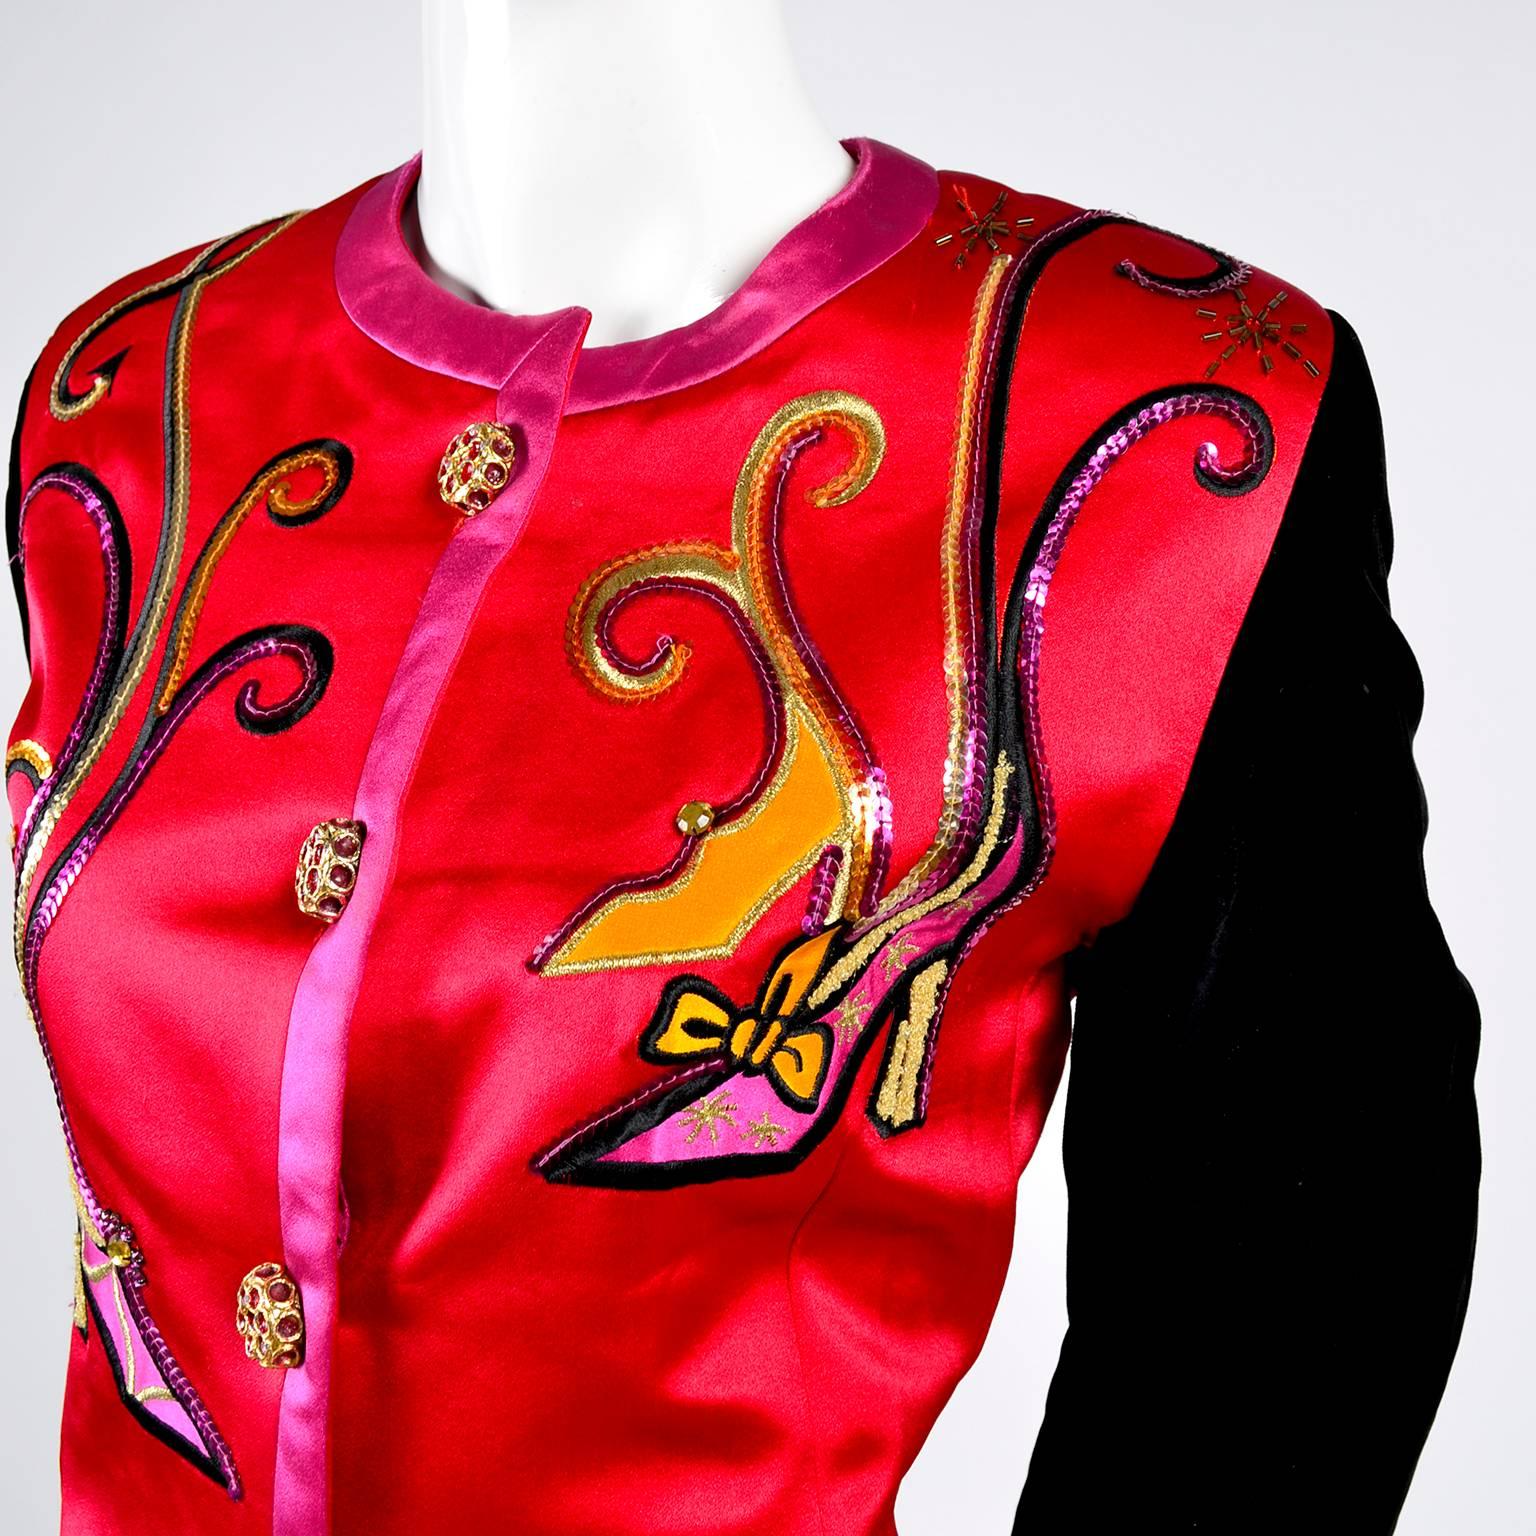 Diese Escada-Jacke aus den 1980er Jahren ist aus rotem Satin mit rosa Satinbesatz und hat lange schwarze Samtärmel.  Der Blazer hat fabelhafte goldene Knöpfe mit rosafarbenen 